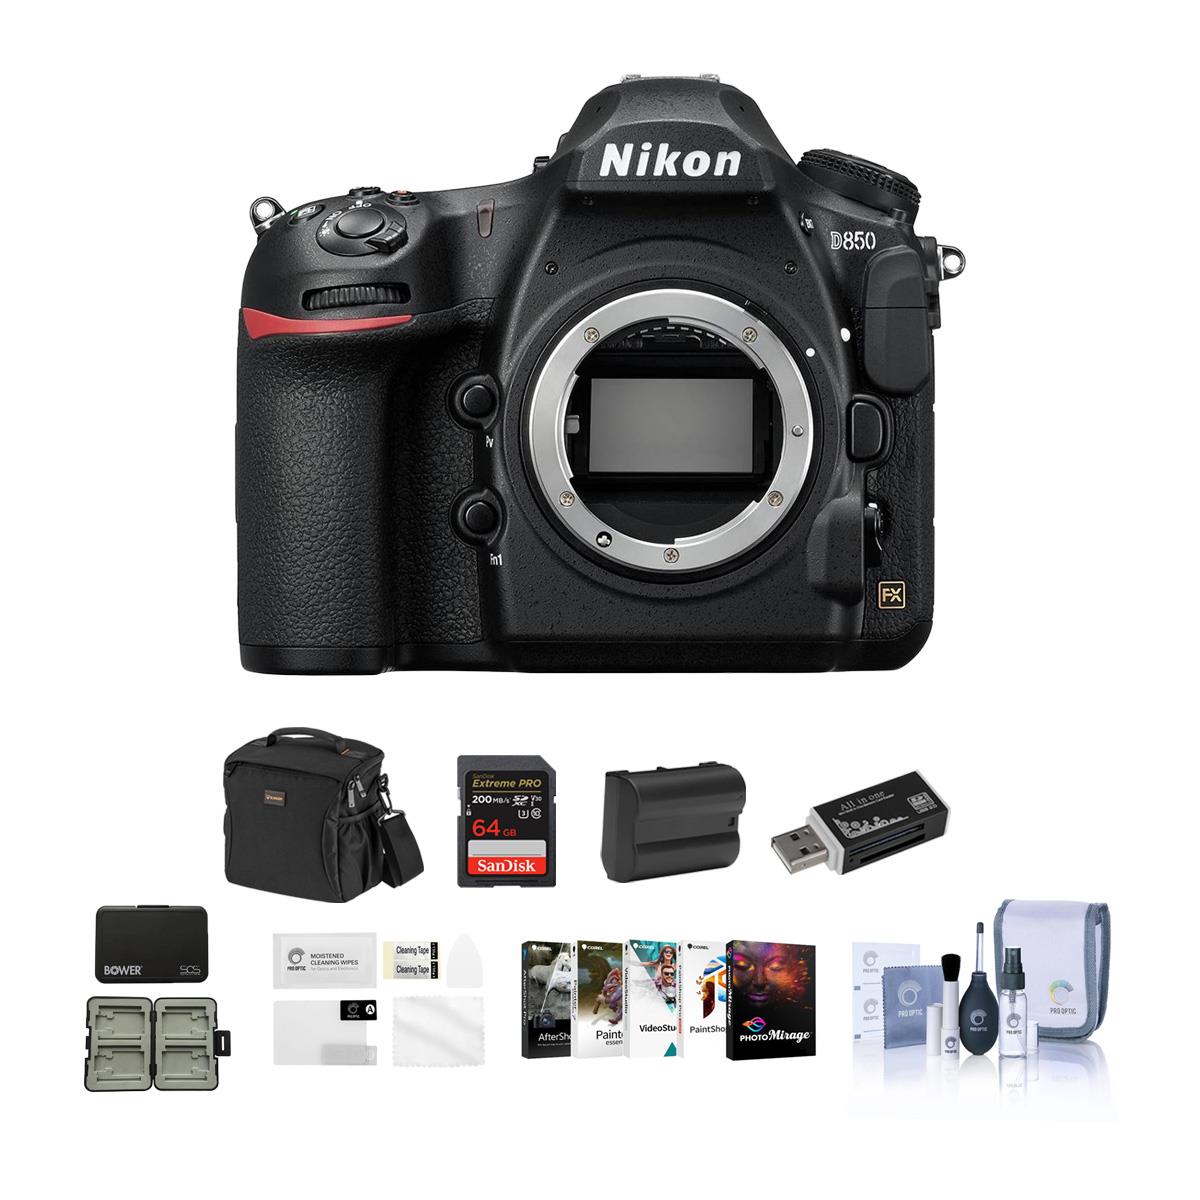 Nikon D850 DSLR Camera Body + Accessory Kit $2197 + free s/h